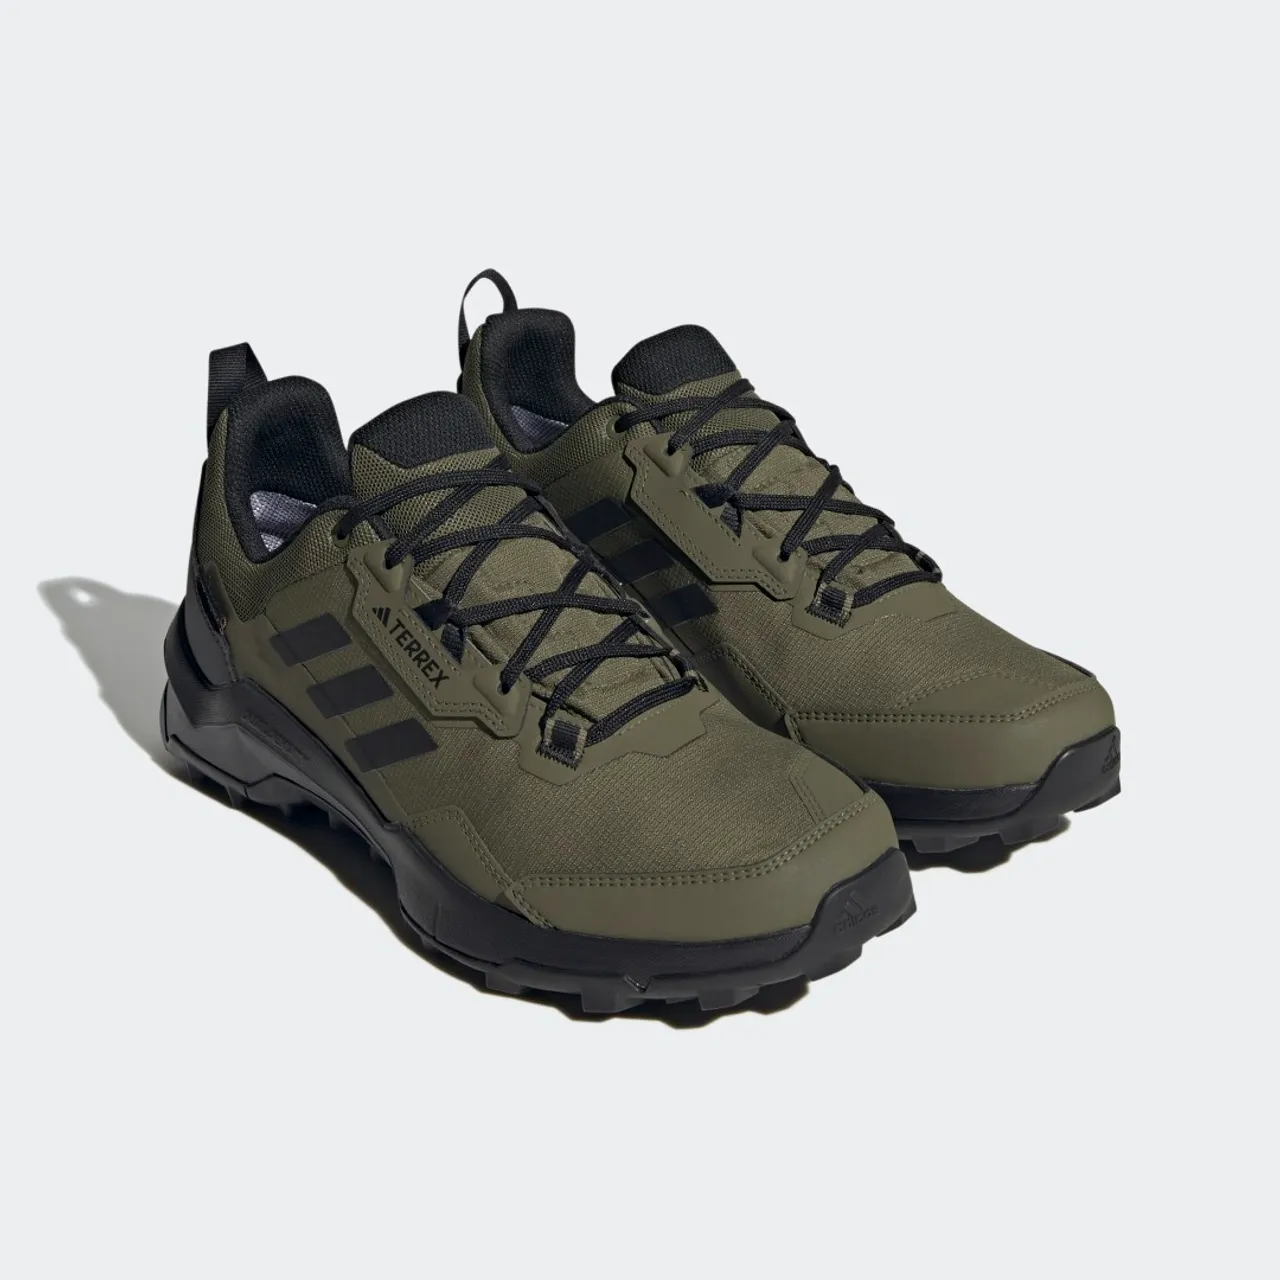 Terrex AX4 GORE-TEX Hiking Shoes